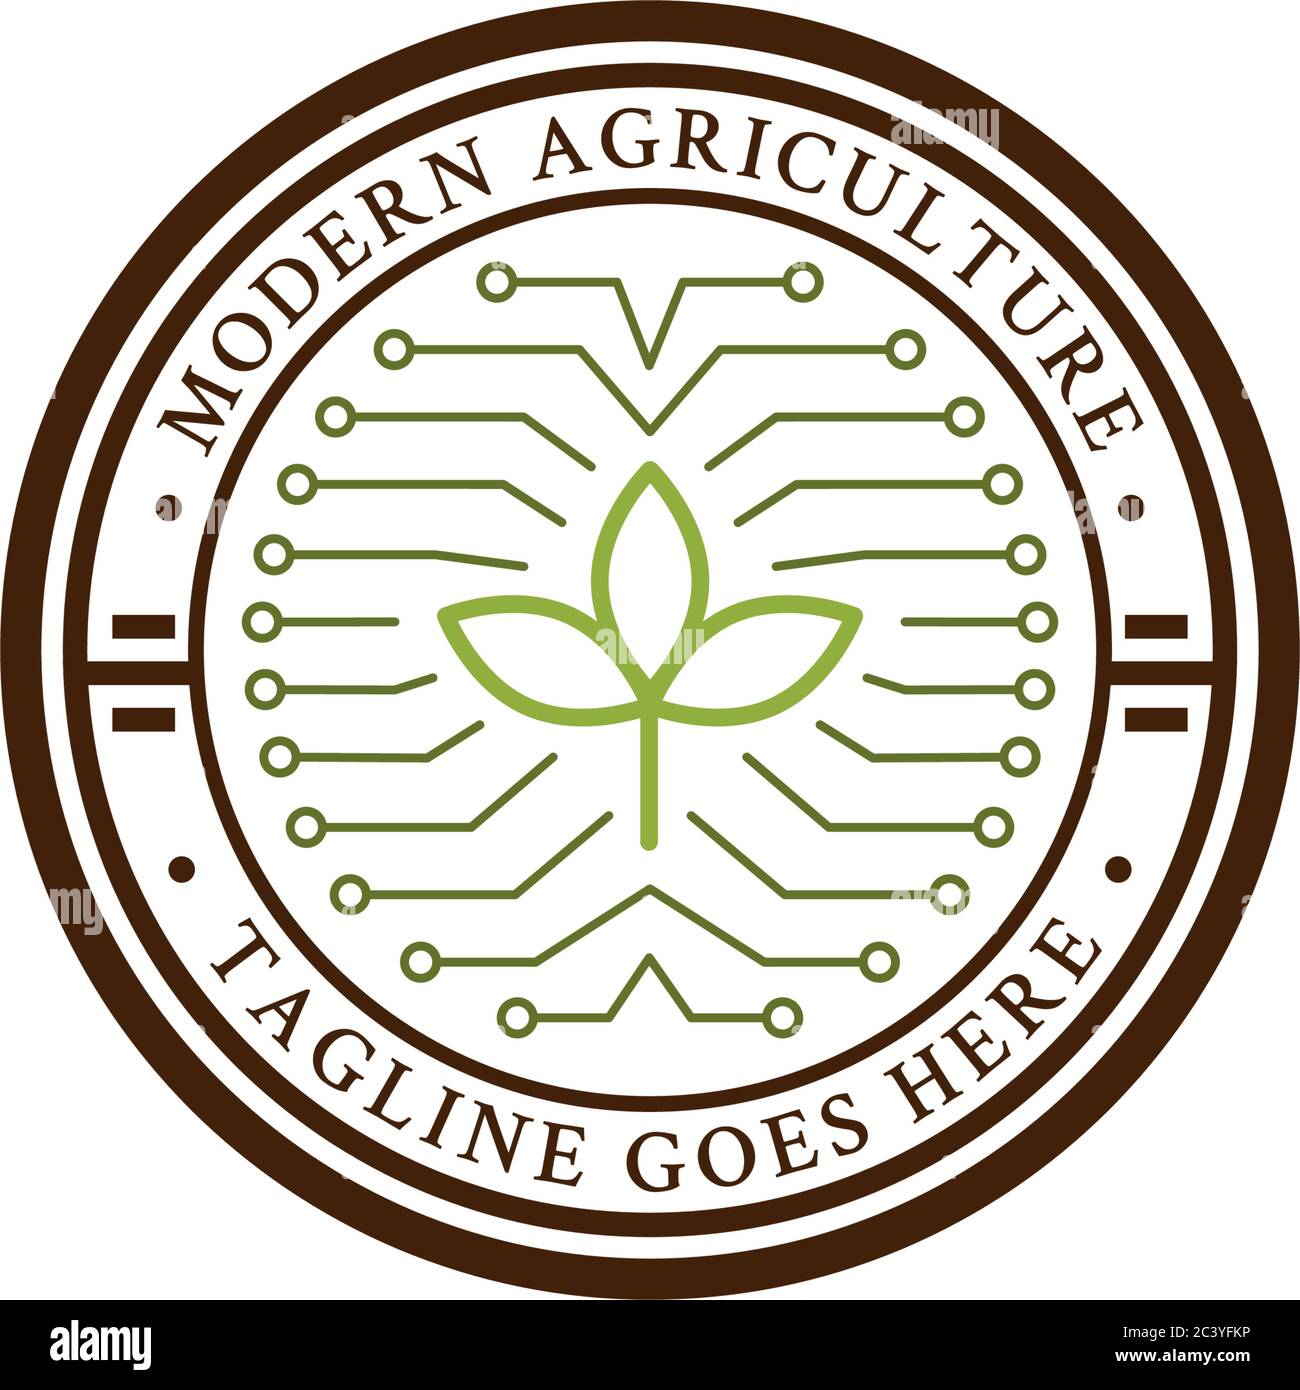 Premium technology agriculture logo vector, modern farm logo design template Stock Vector